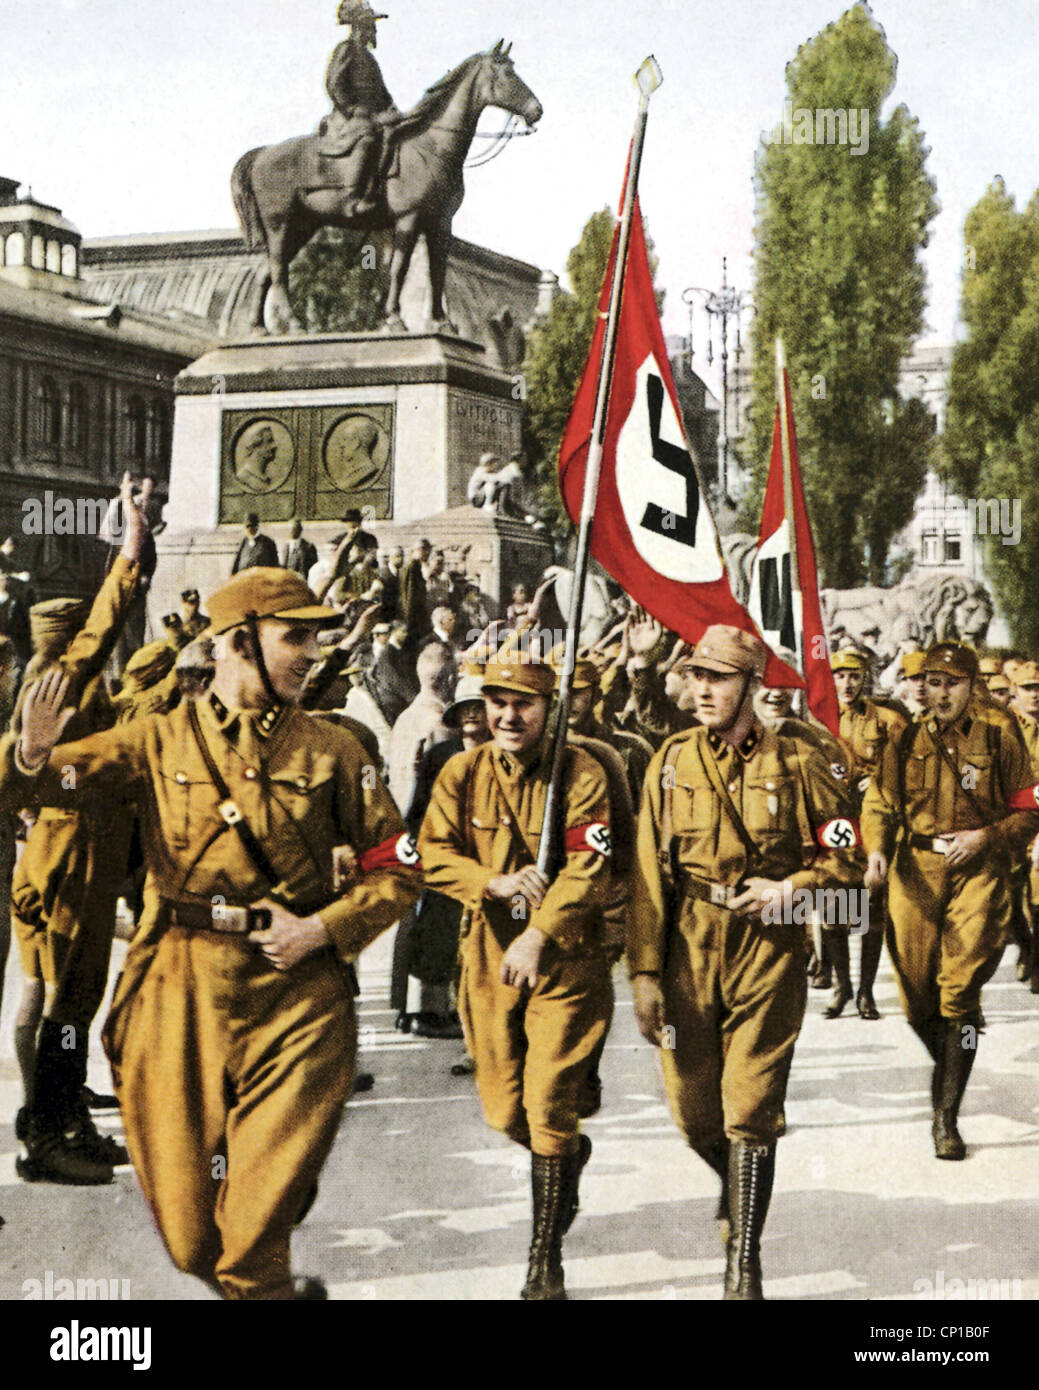 Wessel, Horst, 9.10.1907 - 23.2.1930, deutscher NS-Aktivist, halbe Länge, als Führer einer SA-Einheit in Nürnberg 1929, farbiges Foto, Detail mit H. Wessel, Stockfoto